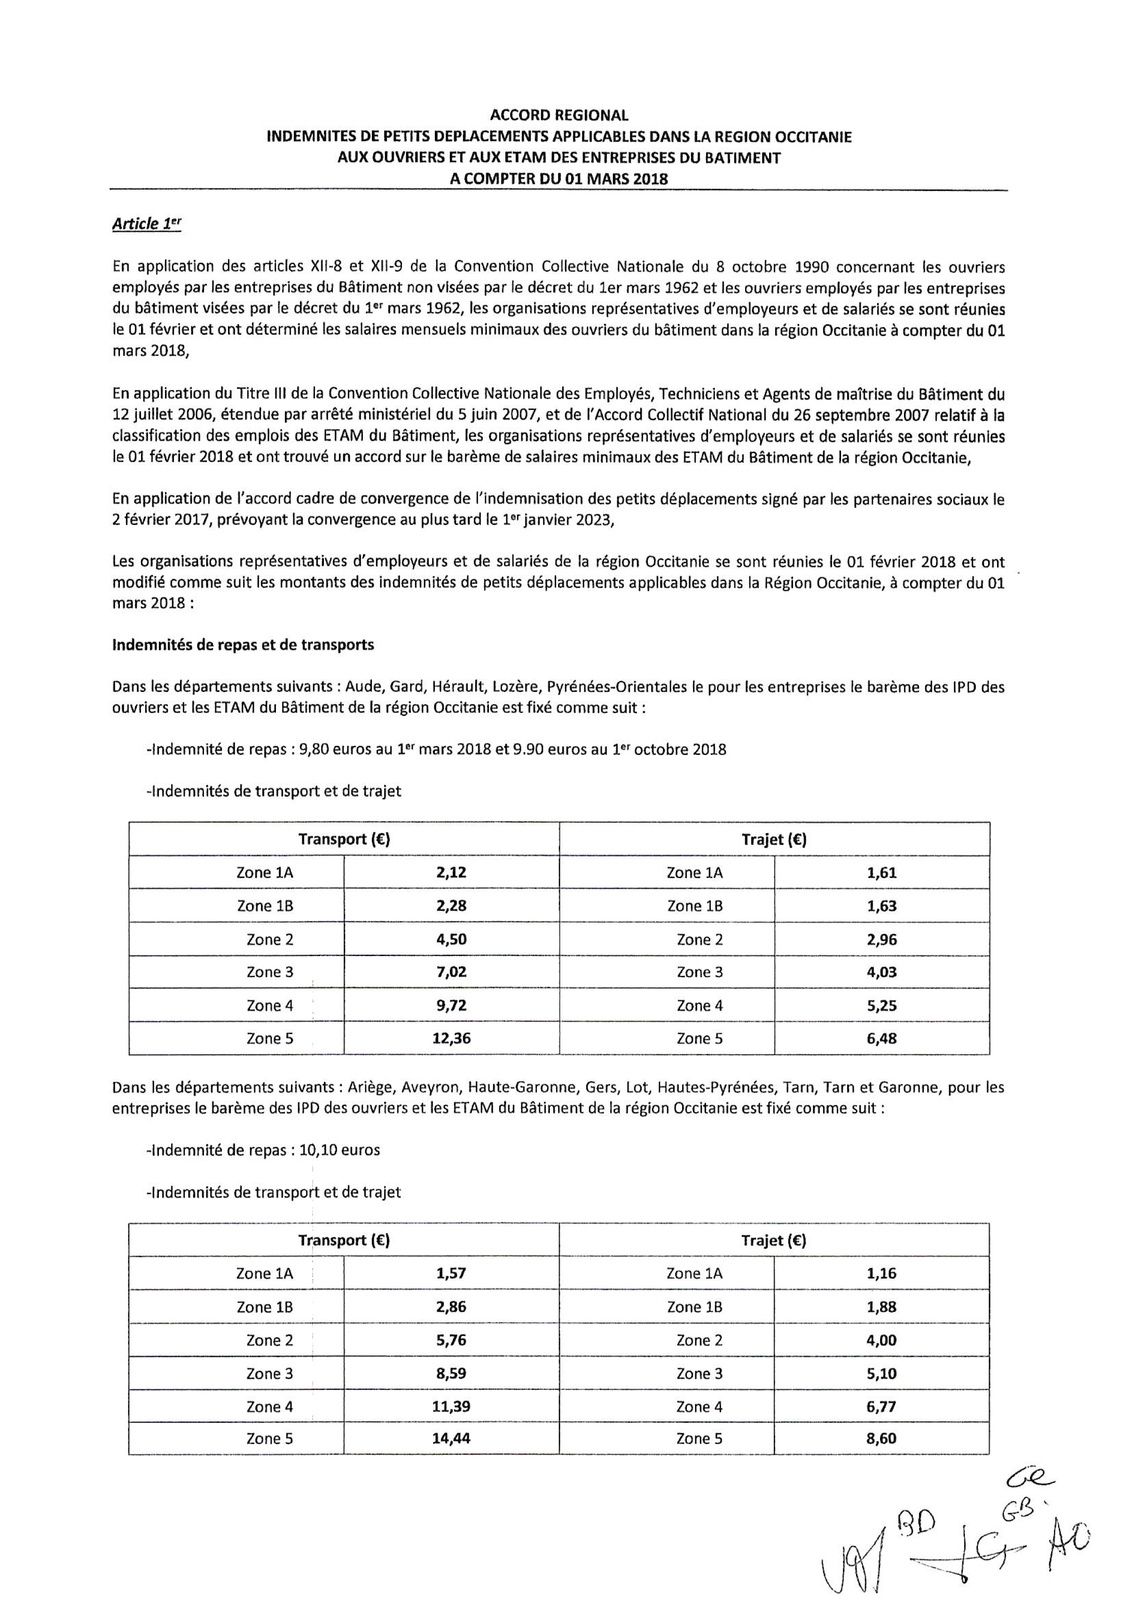 Les salaires des ETAM d'Occitanie - CNC BÂTIMENT CFDT